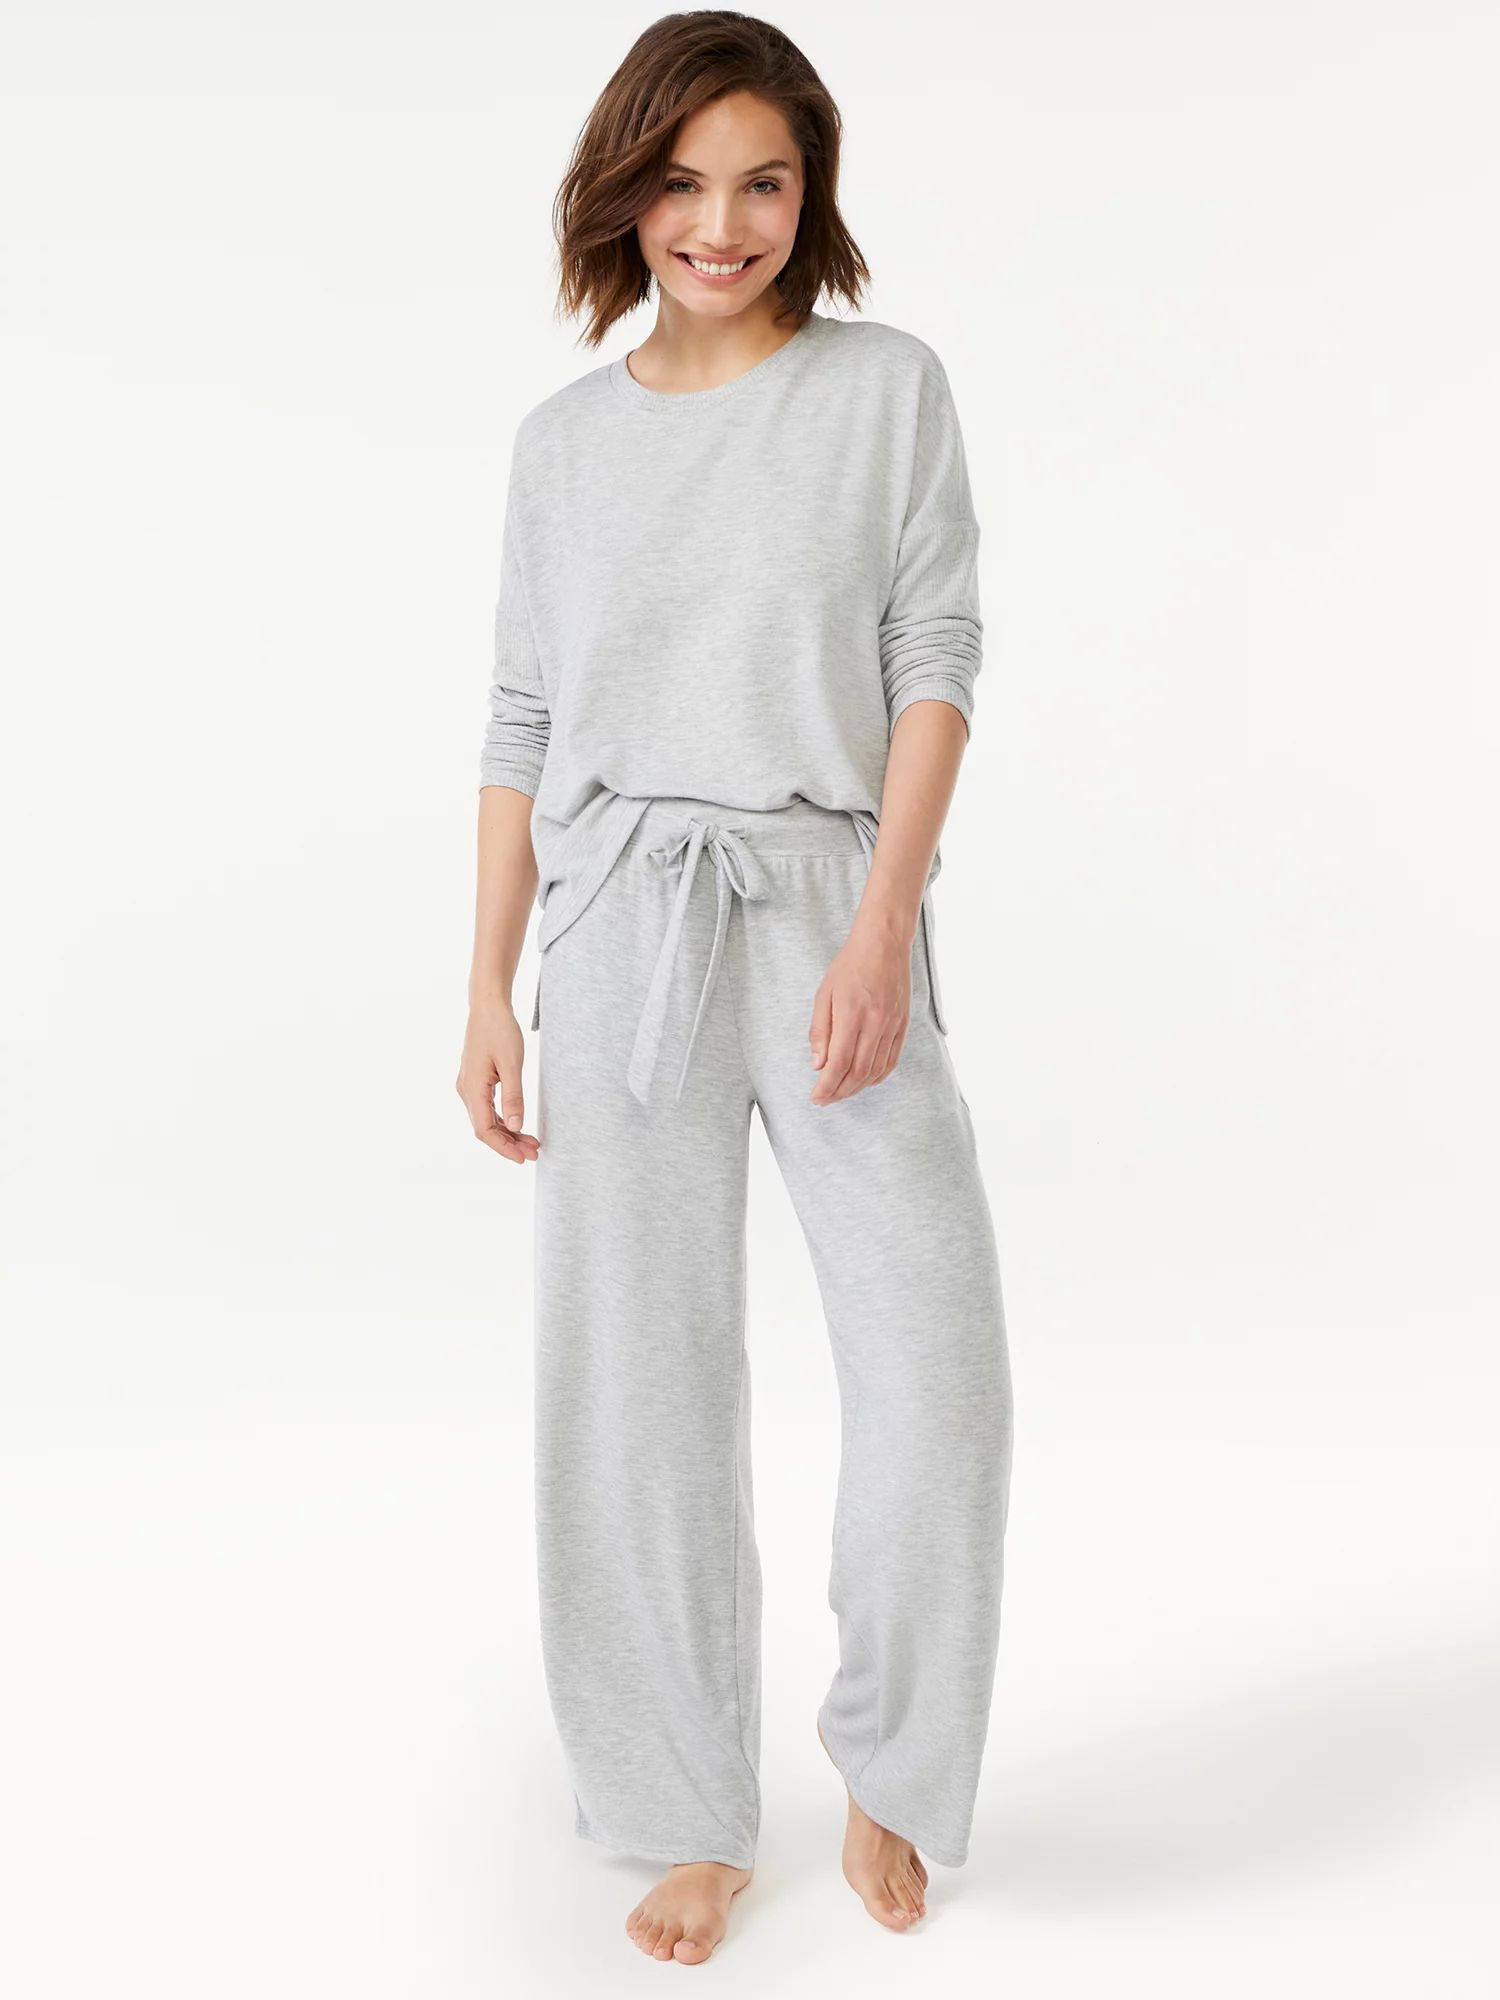 Joyspun Women's Long Sleeve Top and Pants Pajama Set, 2-Piece, Sizes up to 3X | Walmart (US)